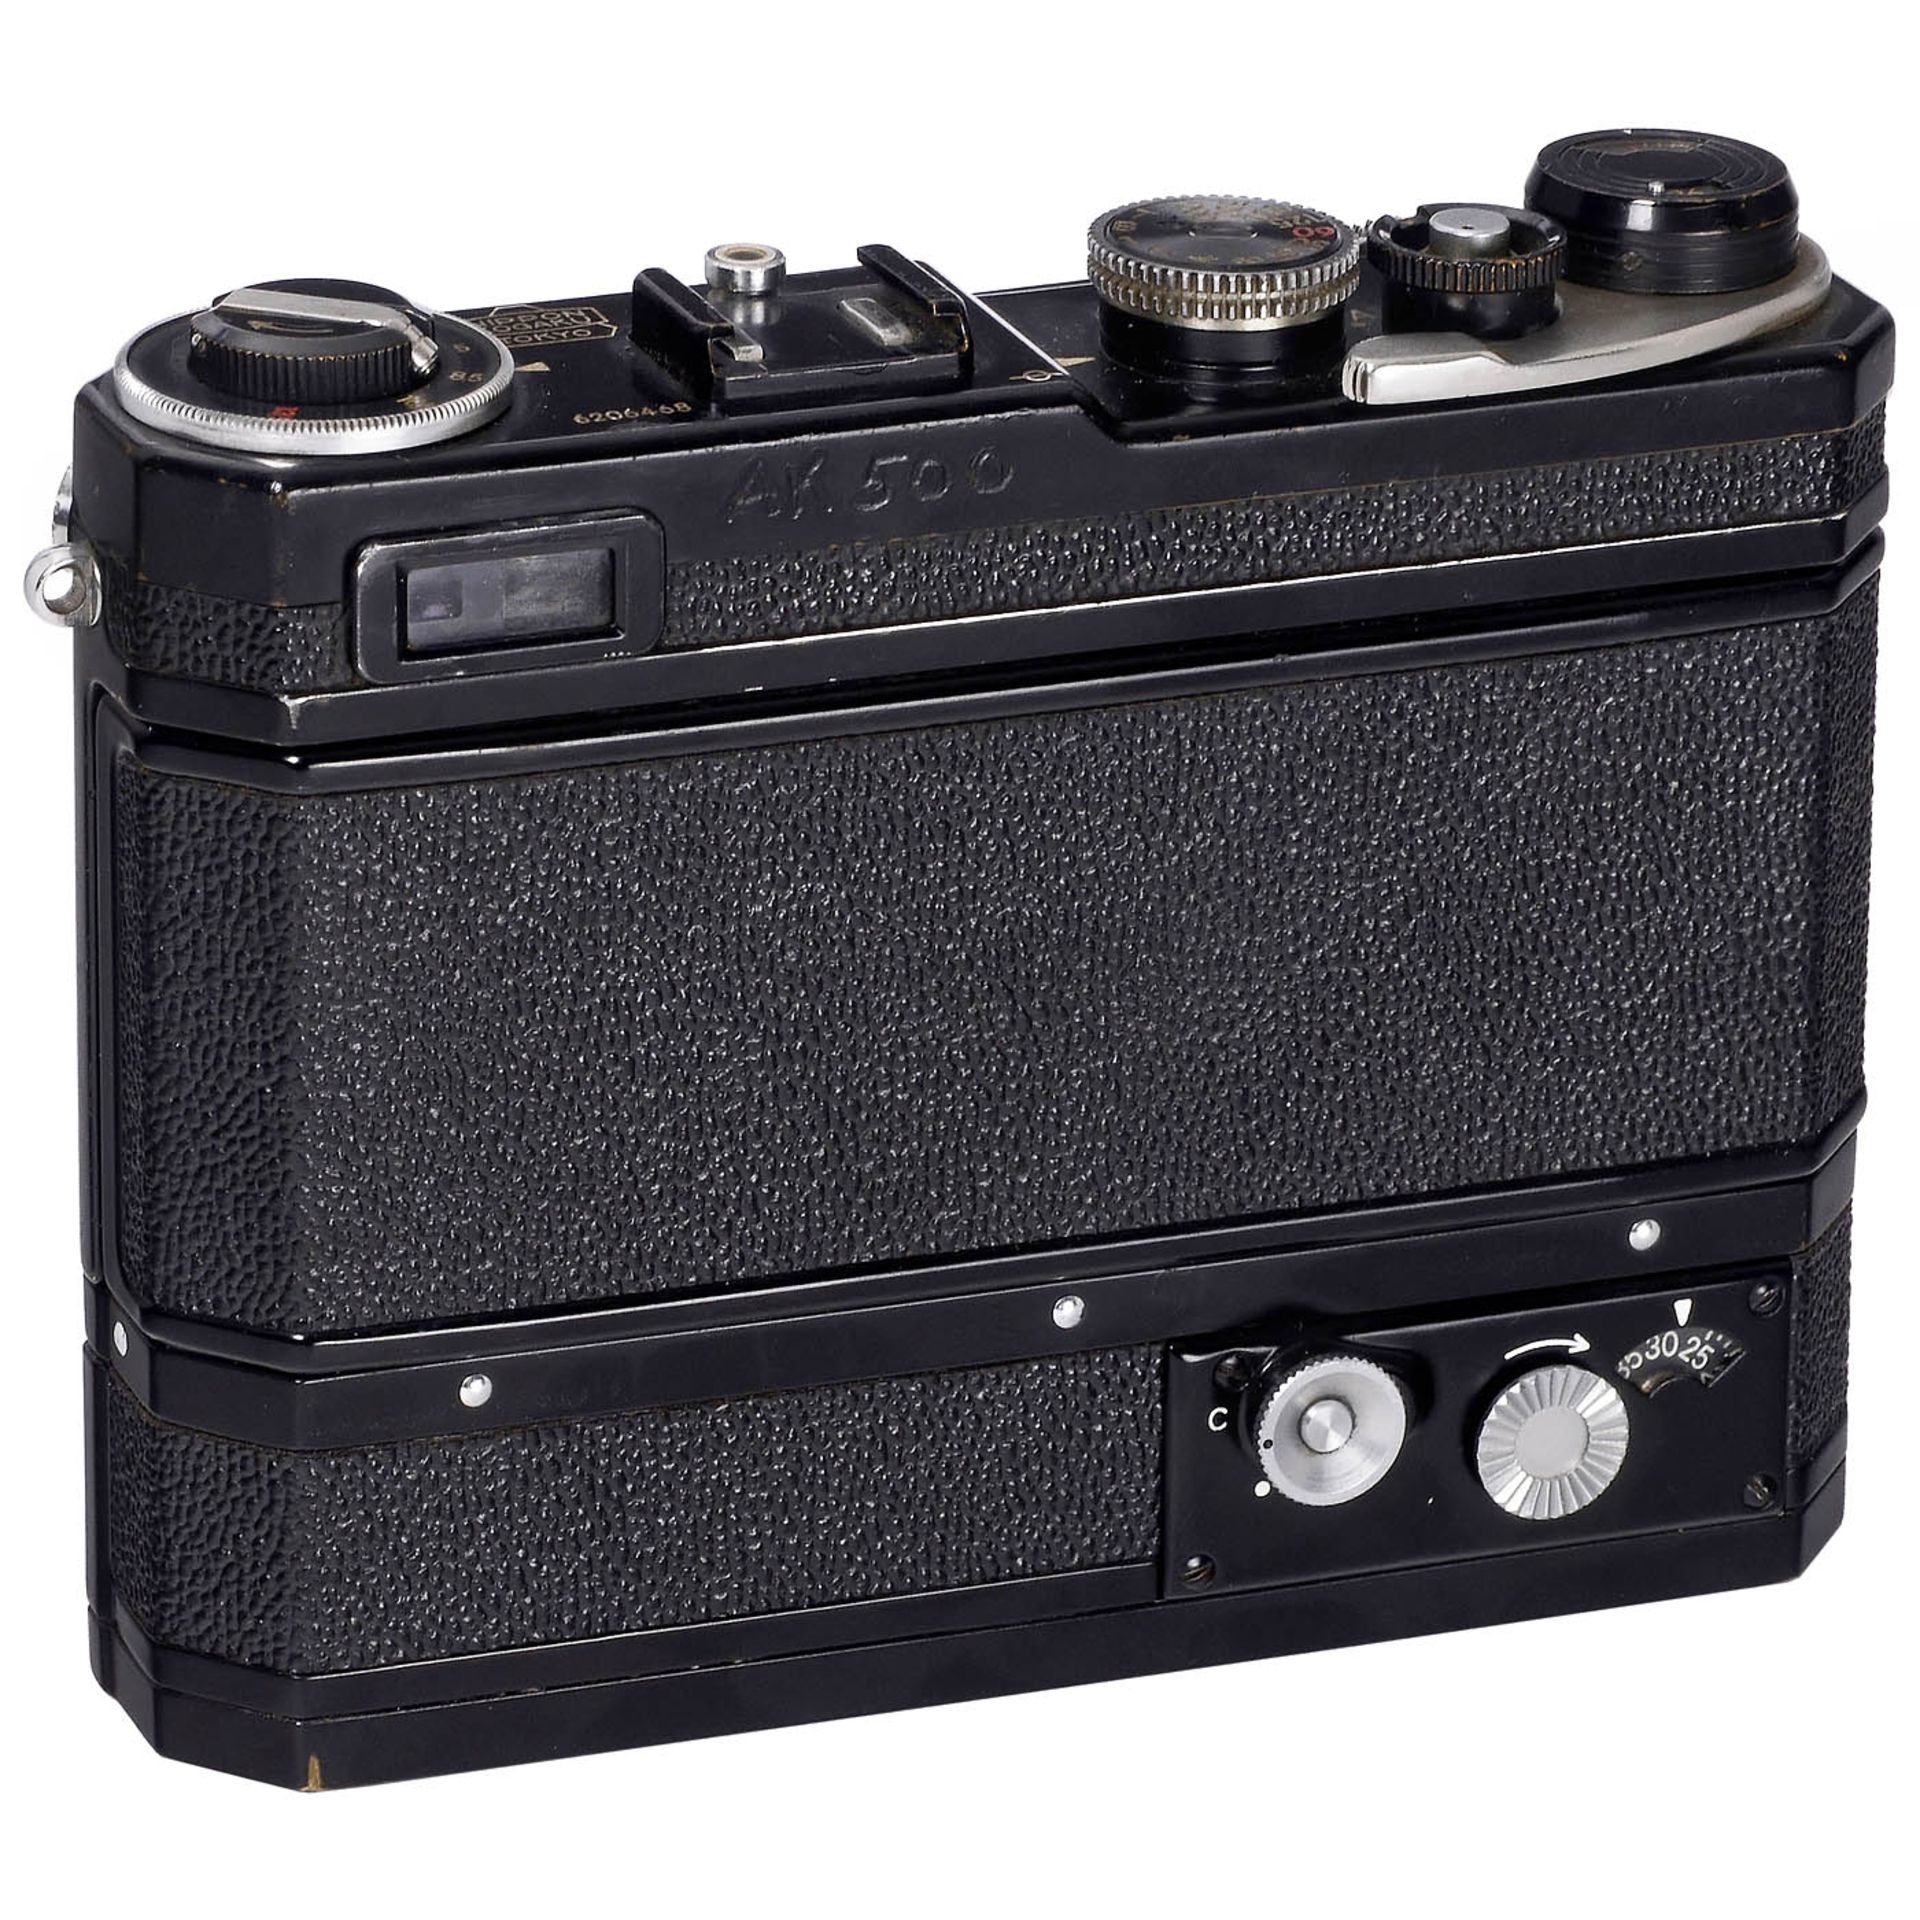 Nikon SP with W-Nikkor 3.5/3.5 cm Lens, 1957 onwards - Image 2 of 3